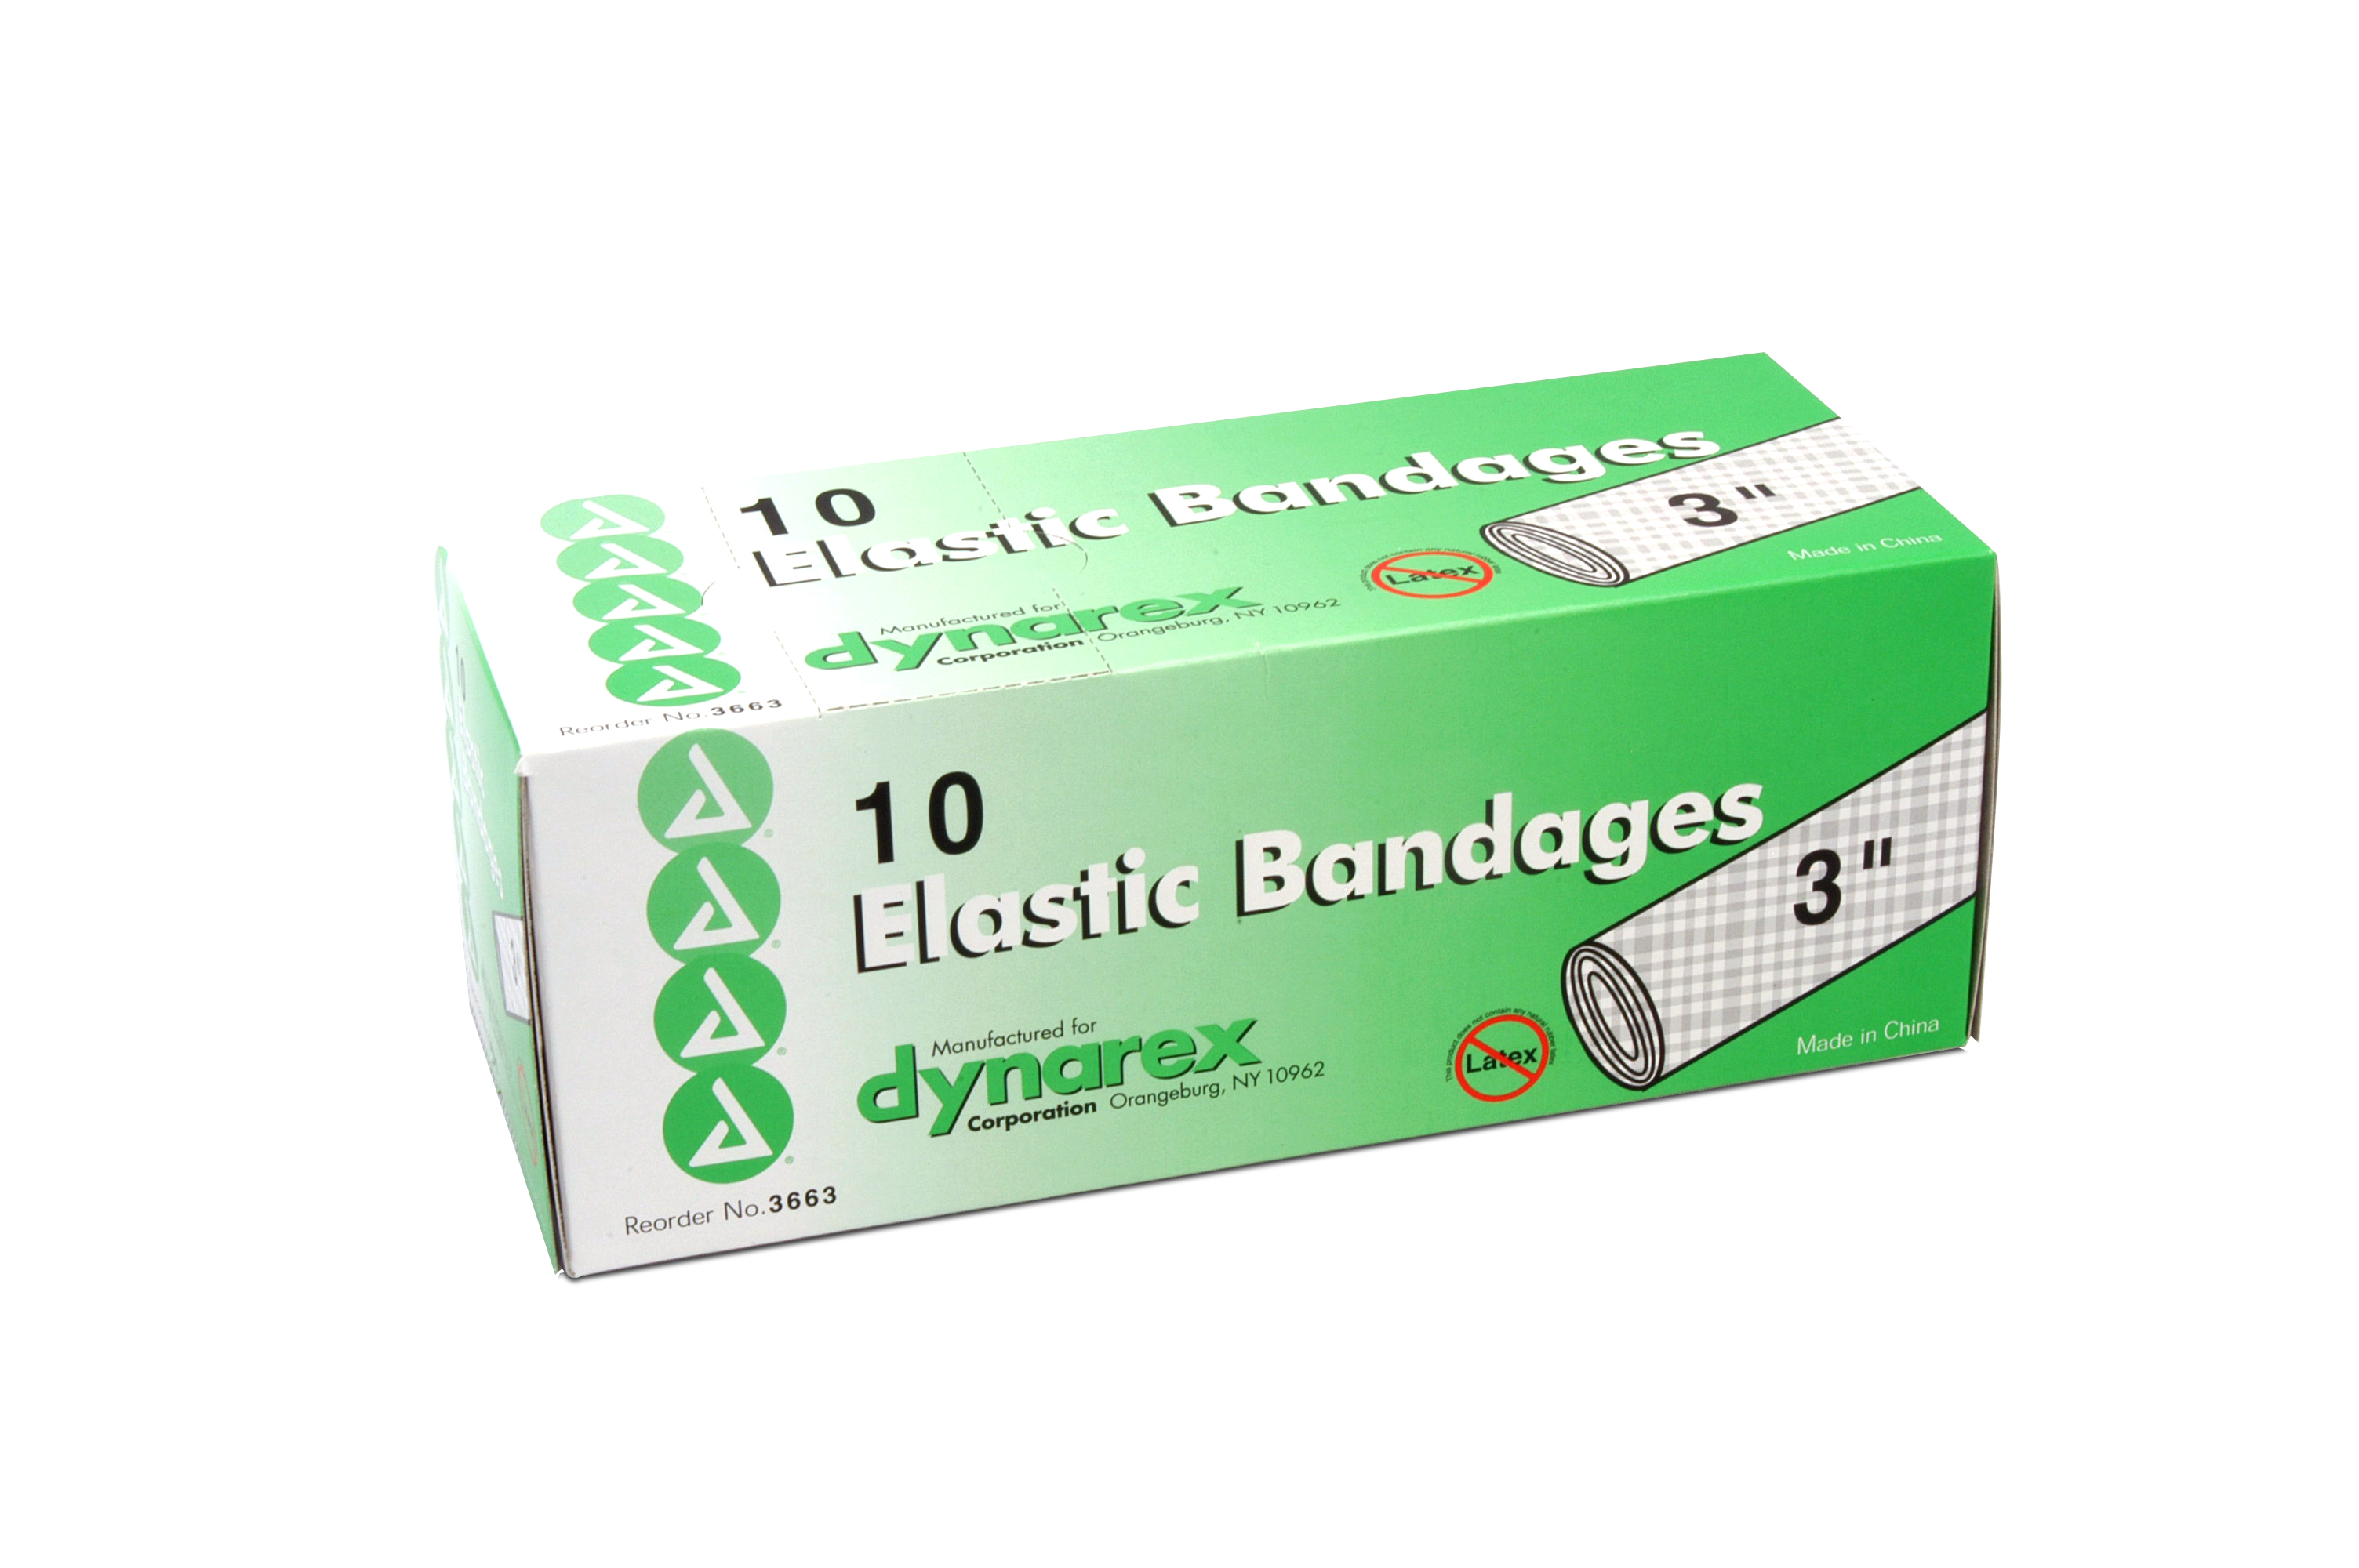 3 Inch Elastic Bandage: Box of 10 image